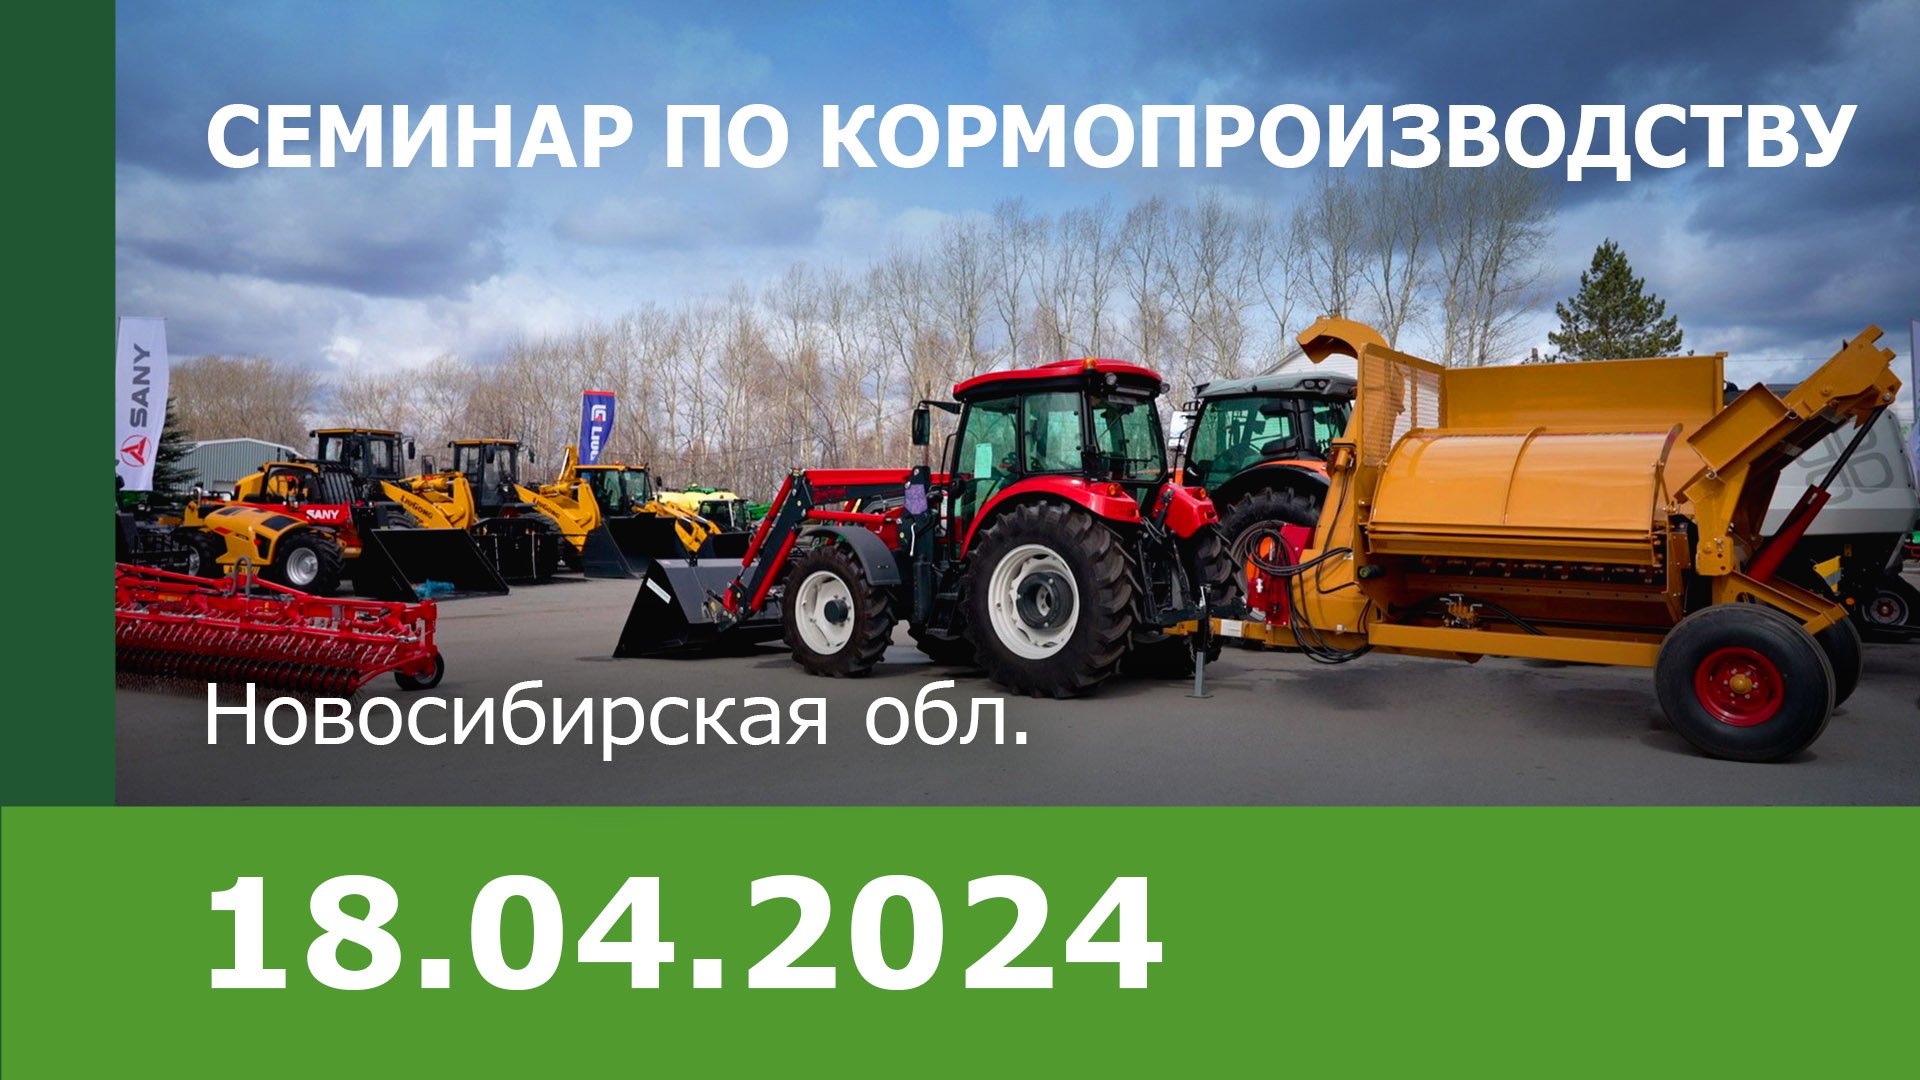 Семинар по кормопроизводству для животноводов Новосибирской области